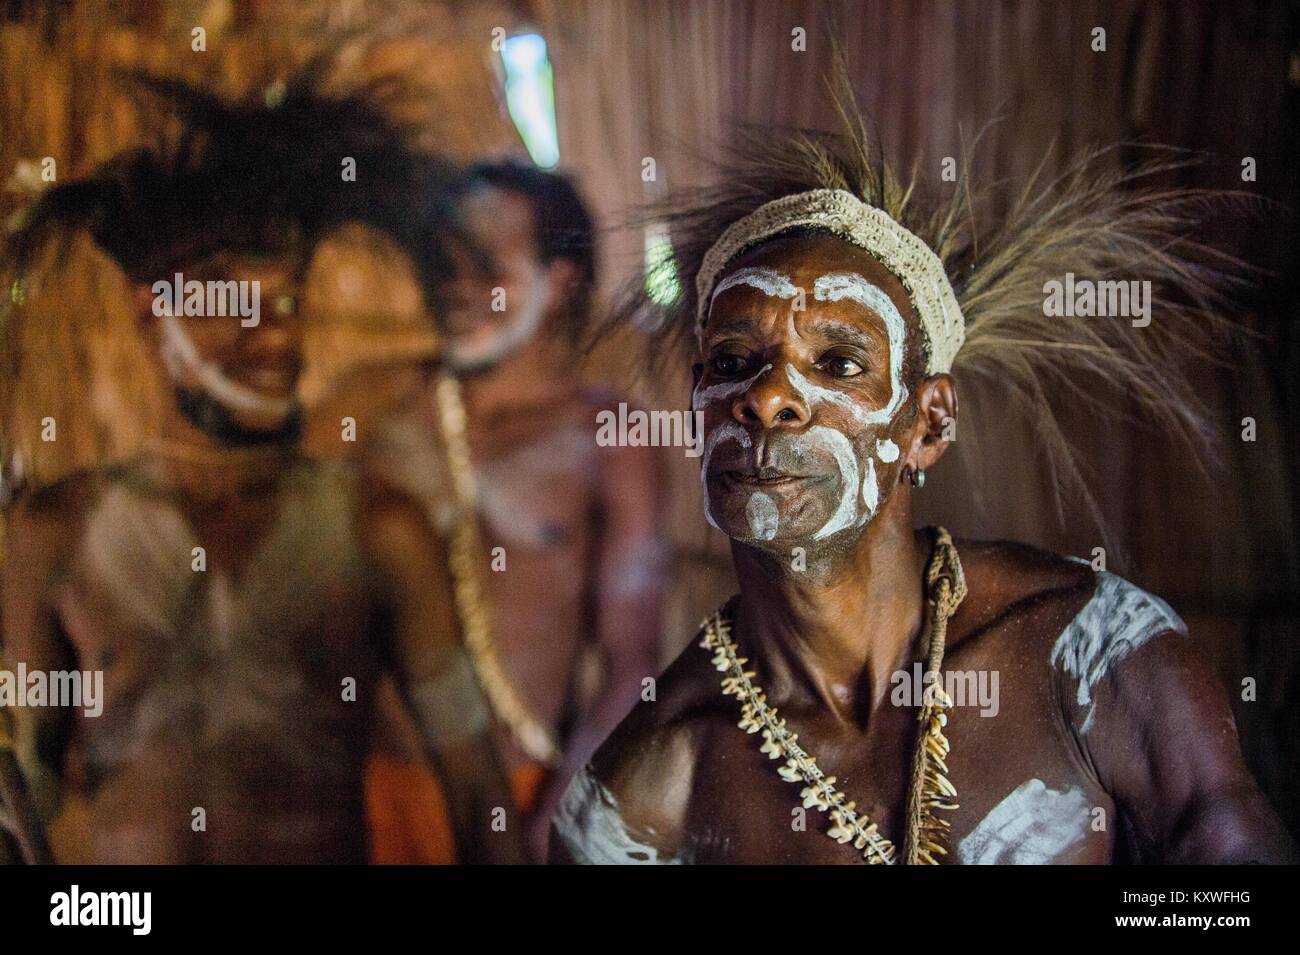 Ritratto di un uomo della tribù di Asmat persone nel rituale face painting. Nuova Guinea. Maggio 23, 2016 Foto Stock